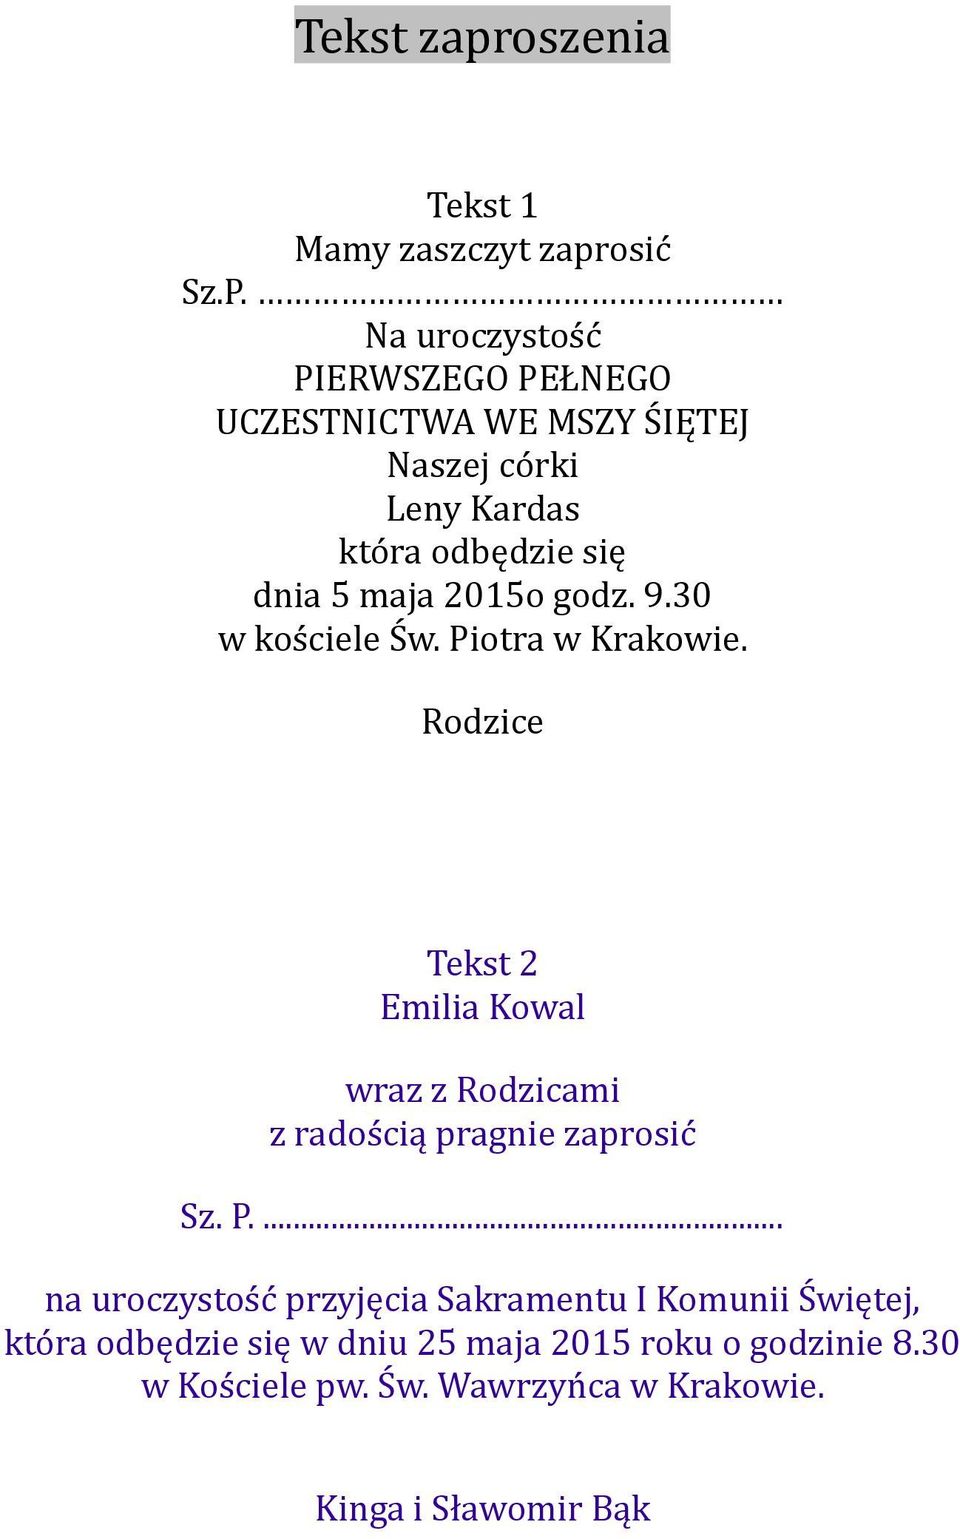 2015o godz. 9.30 w kościele Św. Piotra w Krakowie.